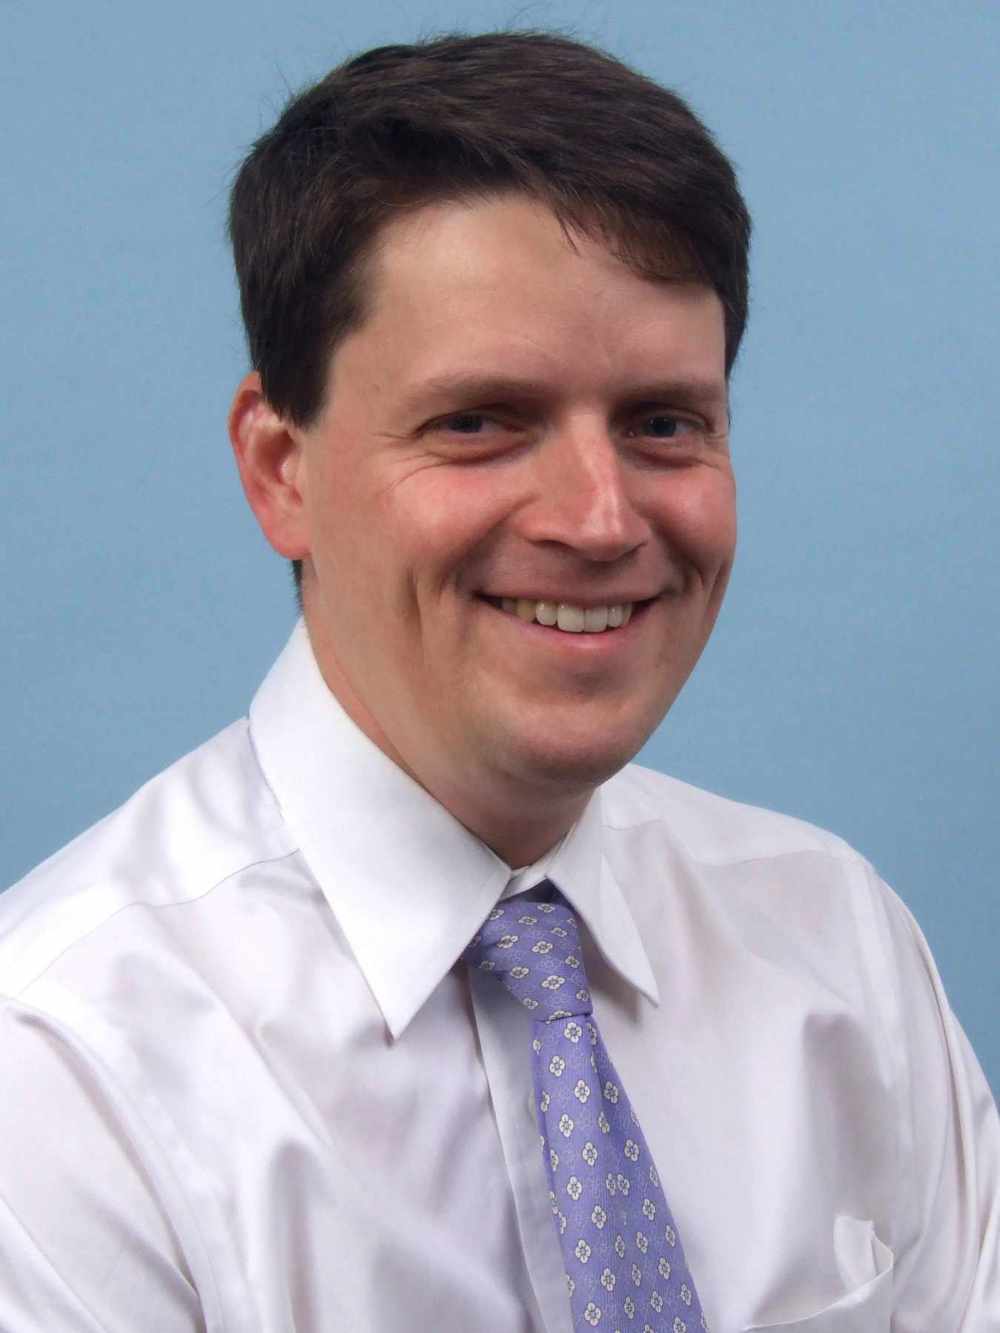 Dr. Daniel Grant Price, MD